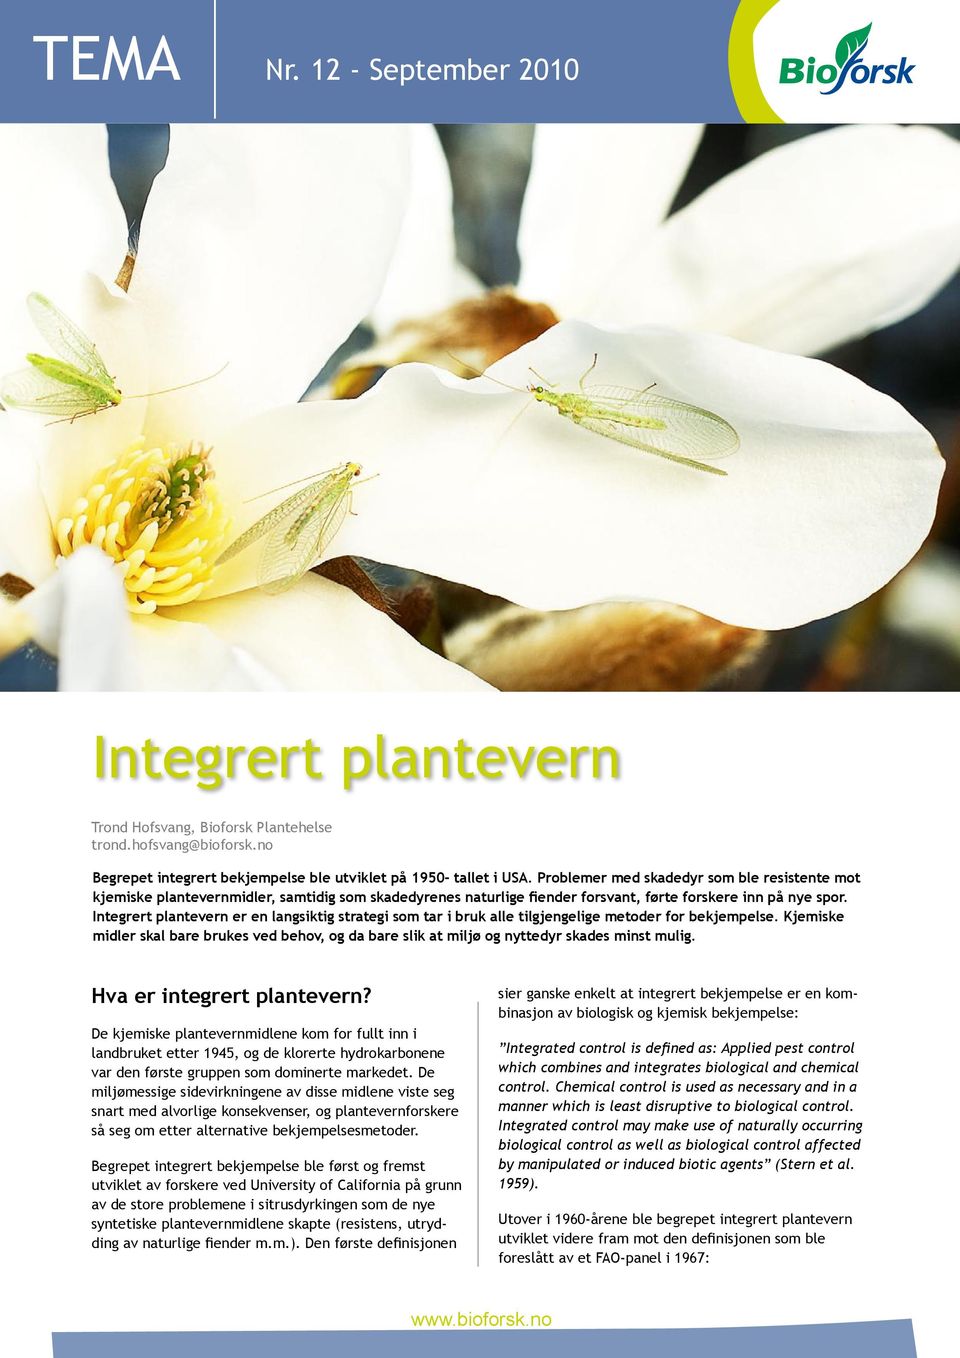 Integrert plantevern er en langsiktig strategi som tar i bruk alle tilgjengelige metoder for bekjempelse.